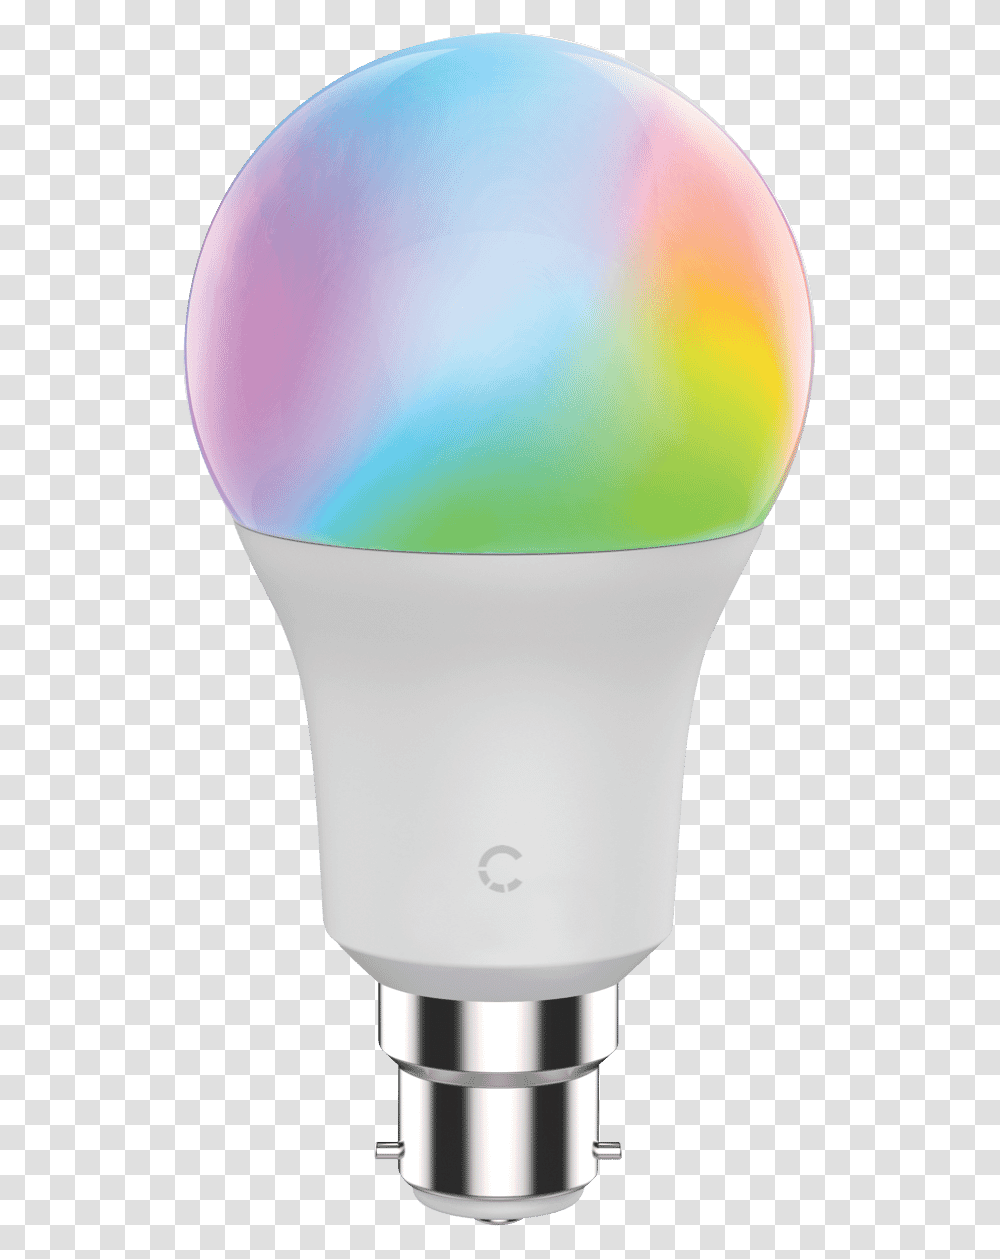 Compact Fluorescent Lamp, Light, Balloon, Lightbulb Transparent Png